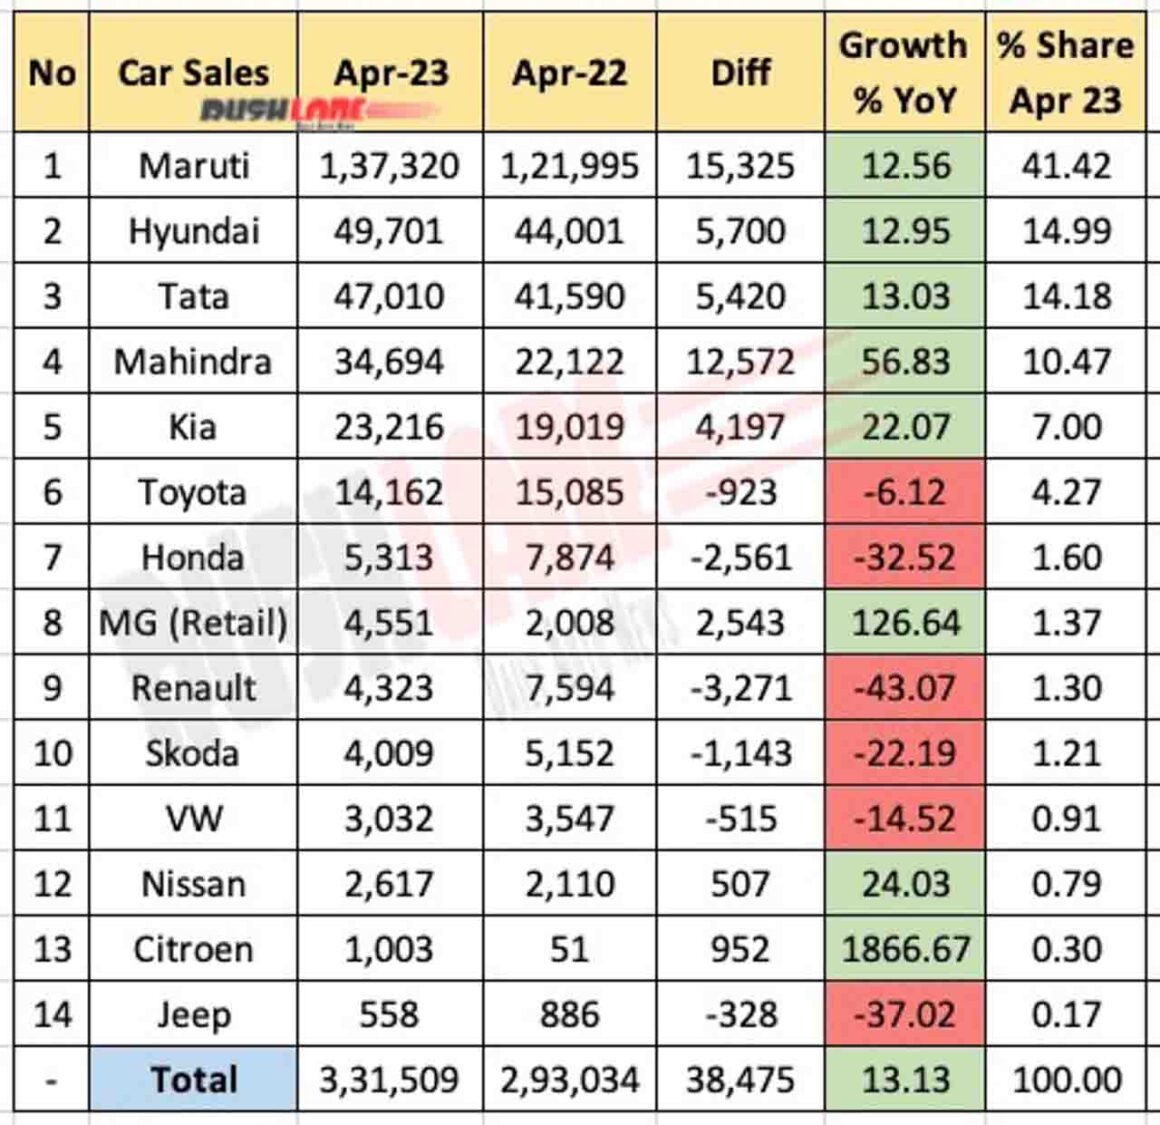 Car Sales April 2023 vs April 2022 - YoY report